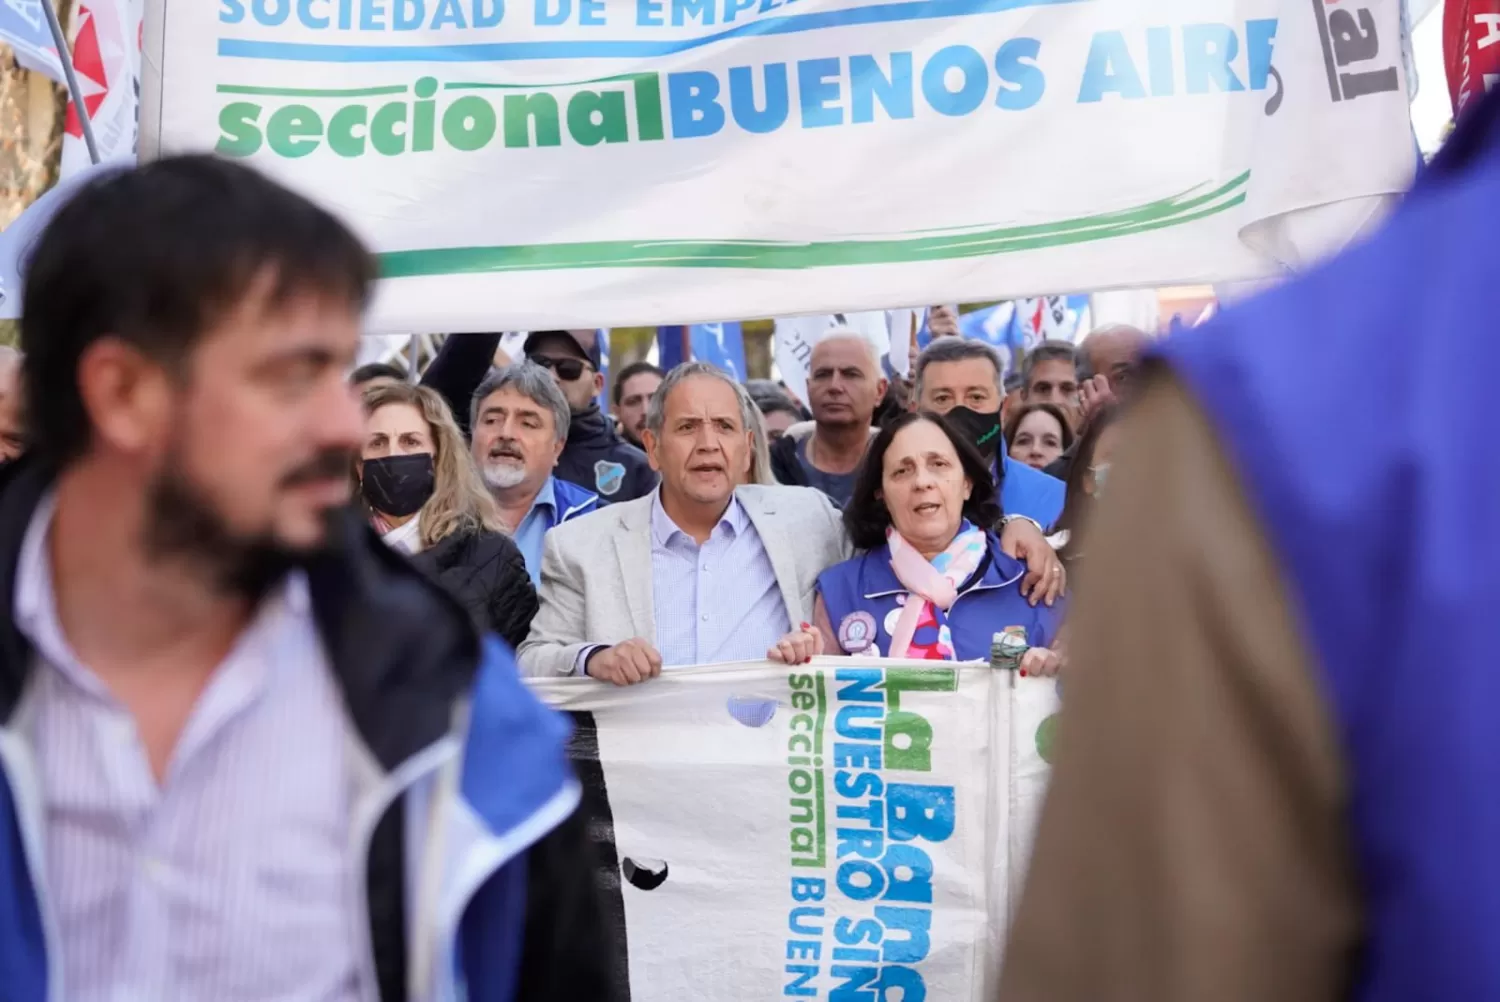 La Asociación Bancaria cerró paritarias con un importante aumento y Cristina Kirchner felicitó al gremio